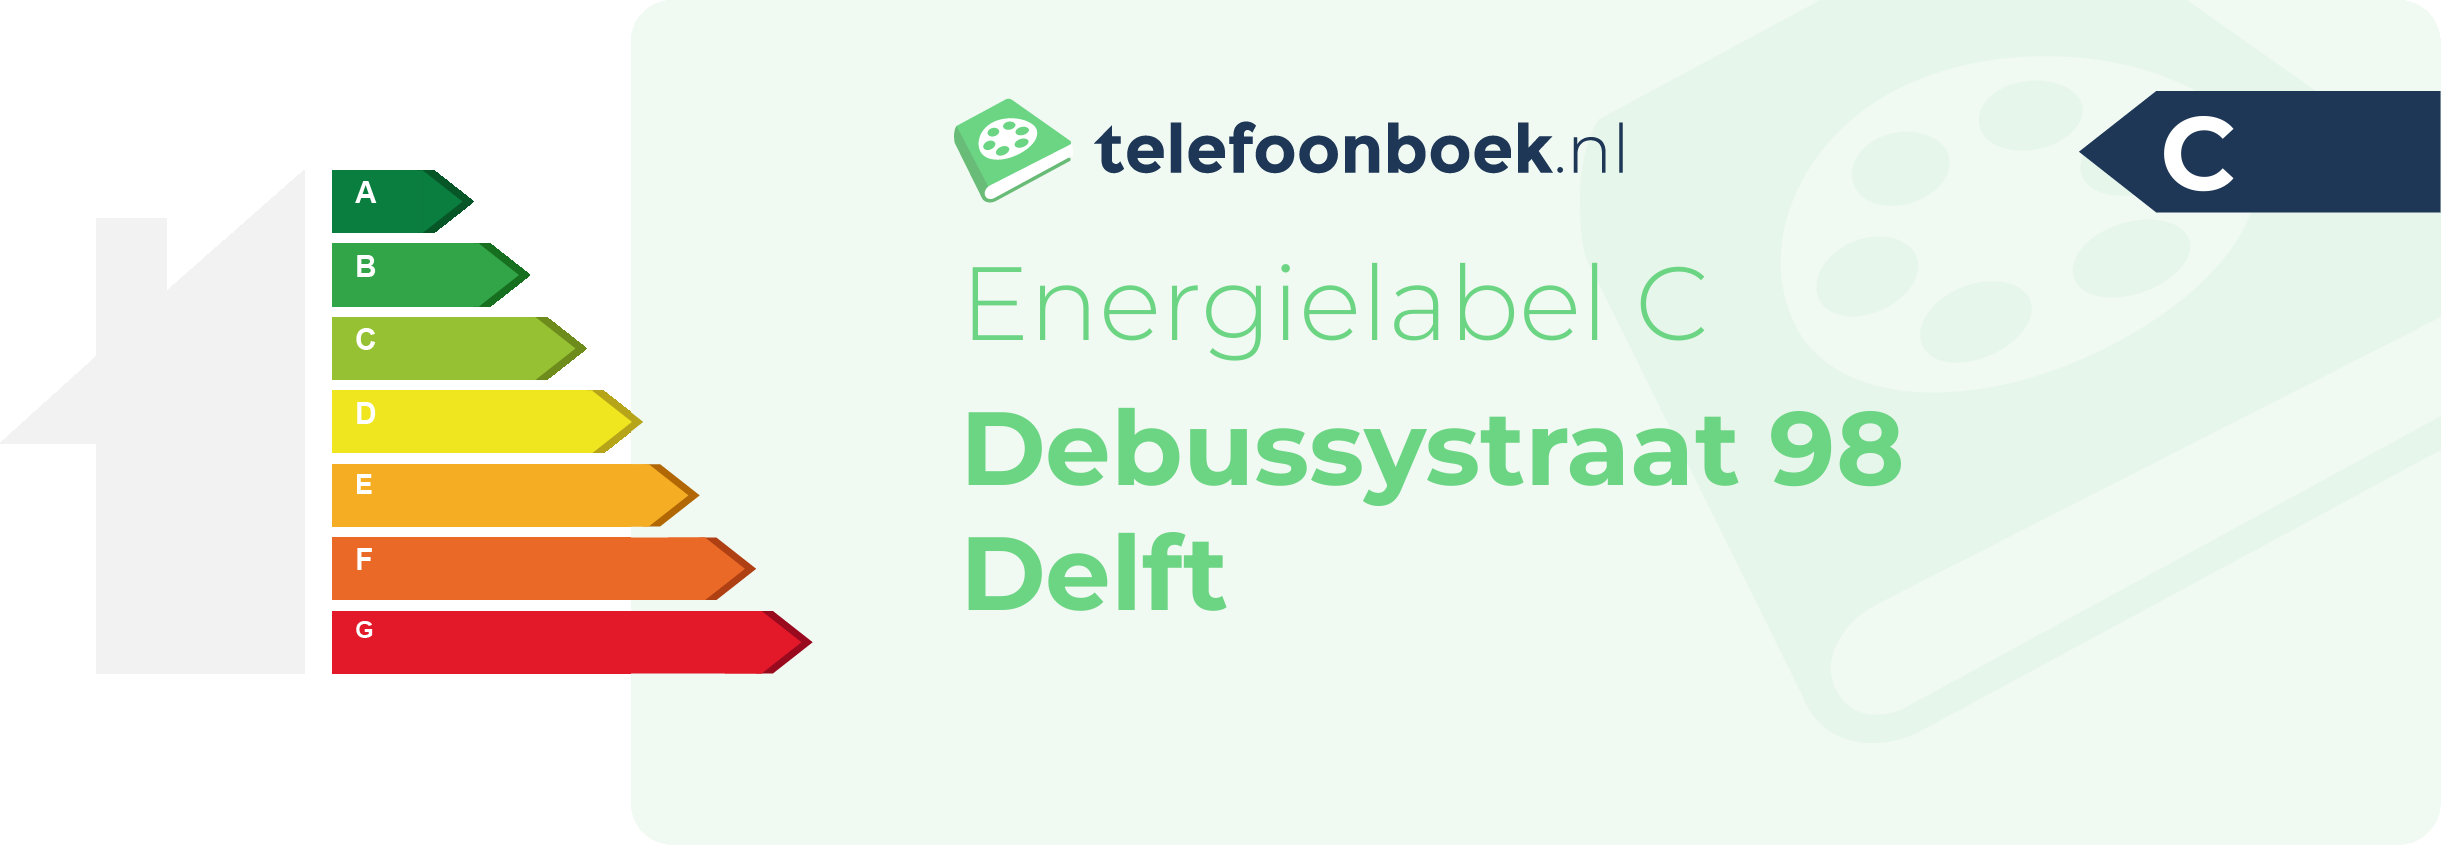 Energielabel Debussystraat 98 Delft